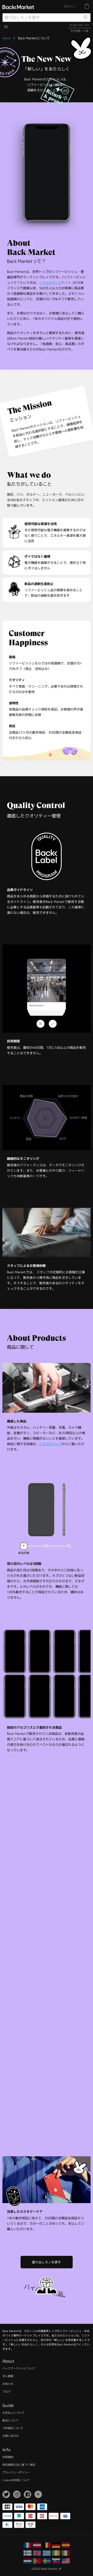 キャプチャ画面 会社名:Back Market Japan株式会社プロジェクト名:Back Market 画面名:アバウト・紹介 デバイス名:SPカテゴリ:家電・日用品・インテリア・雑貨タグ:SP,アバウト・紹介